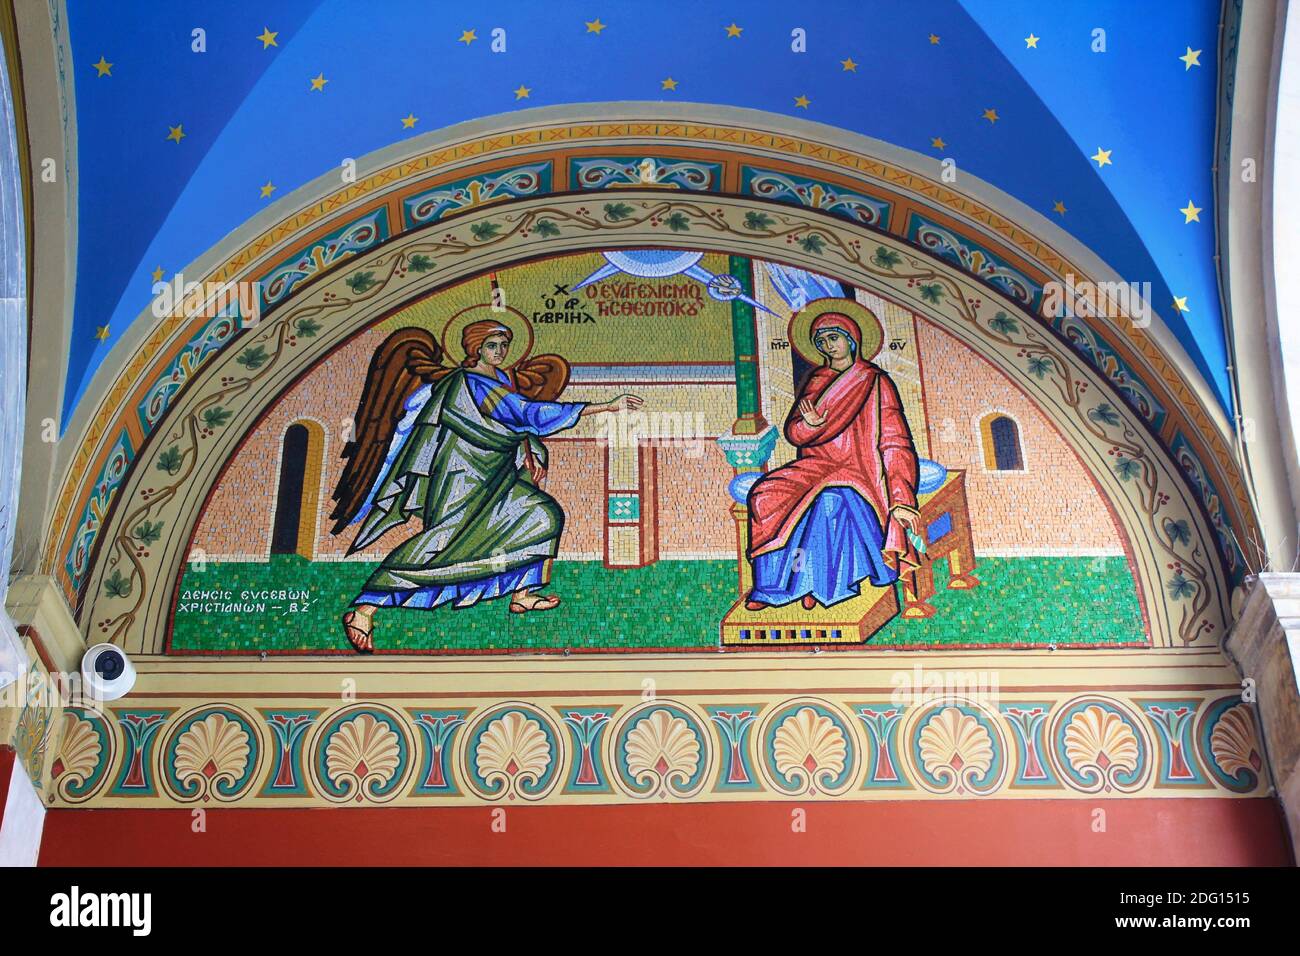 Bel mosaico che mostra l'Annunciazione alla Vergine Maria al di fuori della chiesa cristiana ortodossa - Atene, Grecia, marzo 12 2020. Foto Stock